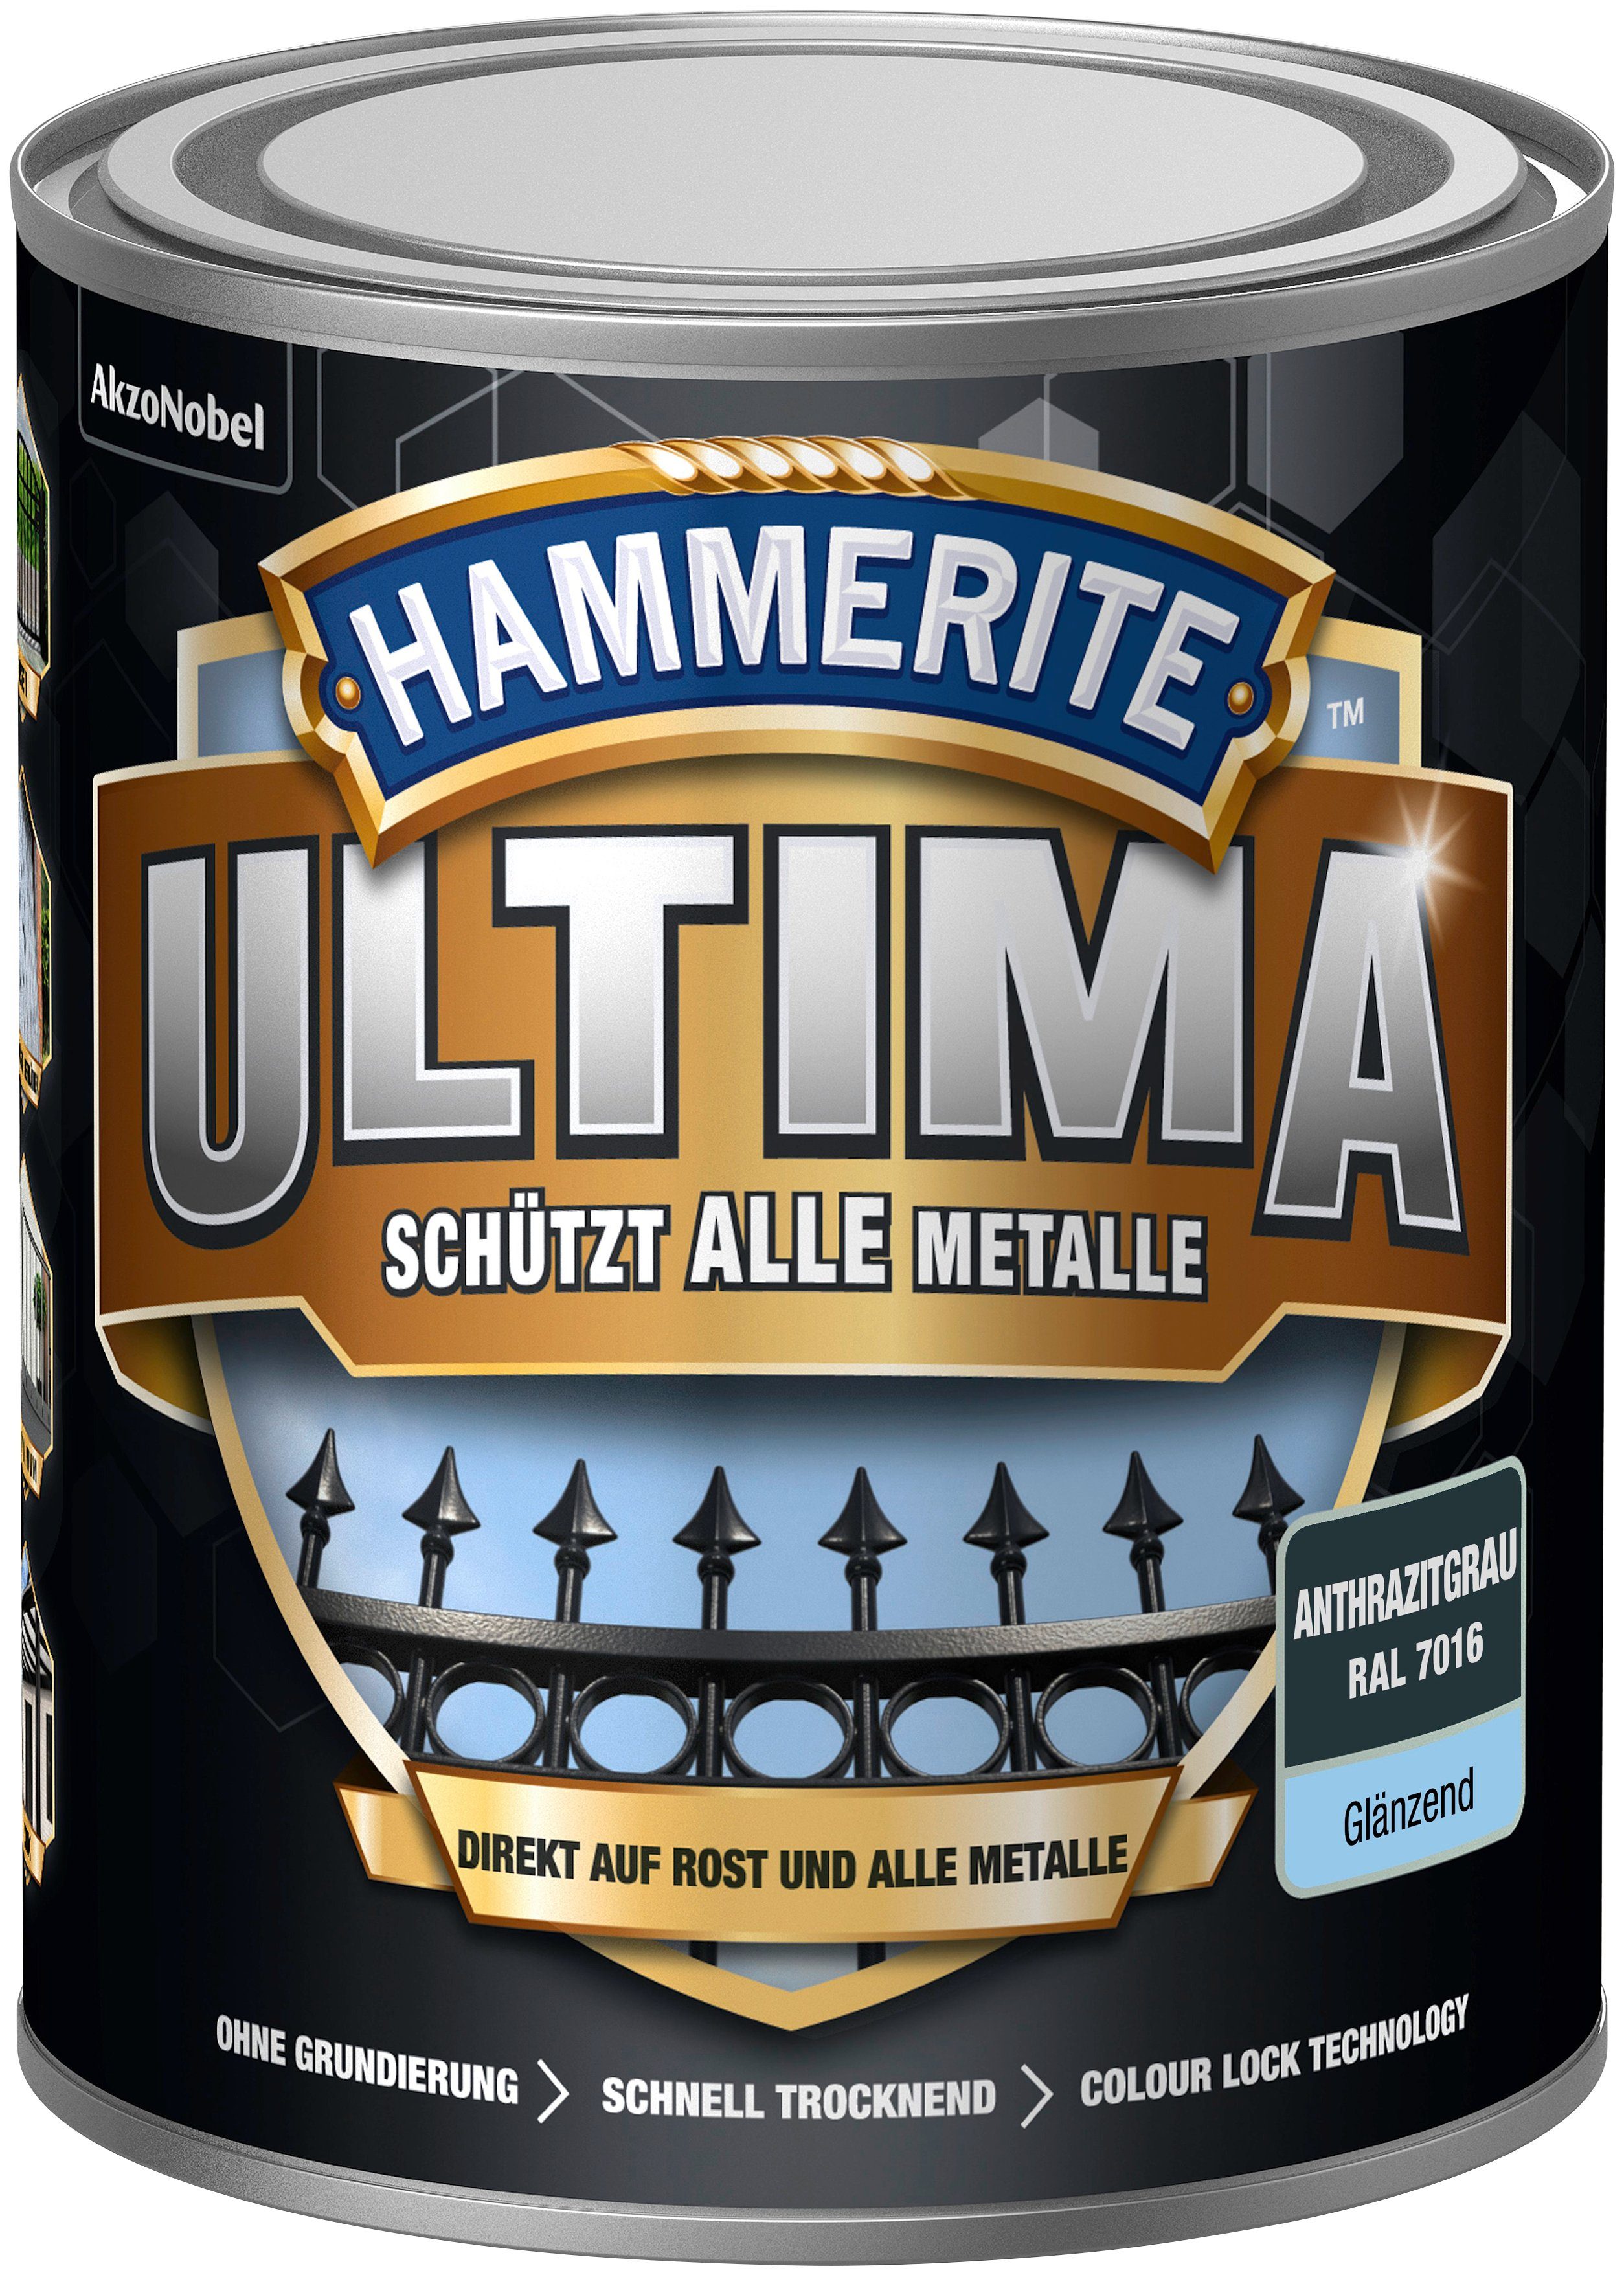 Hammerite  Metallschutzlack ULTIMA schützt alle Metalle, 3in1, anthrazitgrau RAL 7016, glänzend